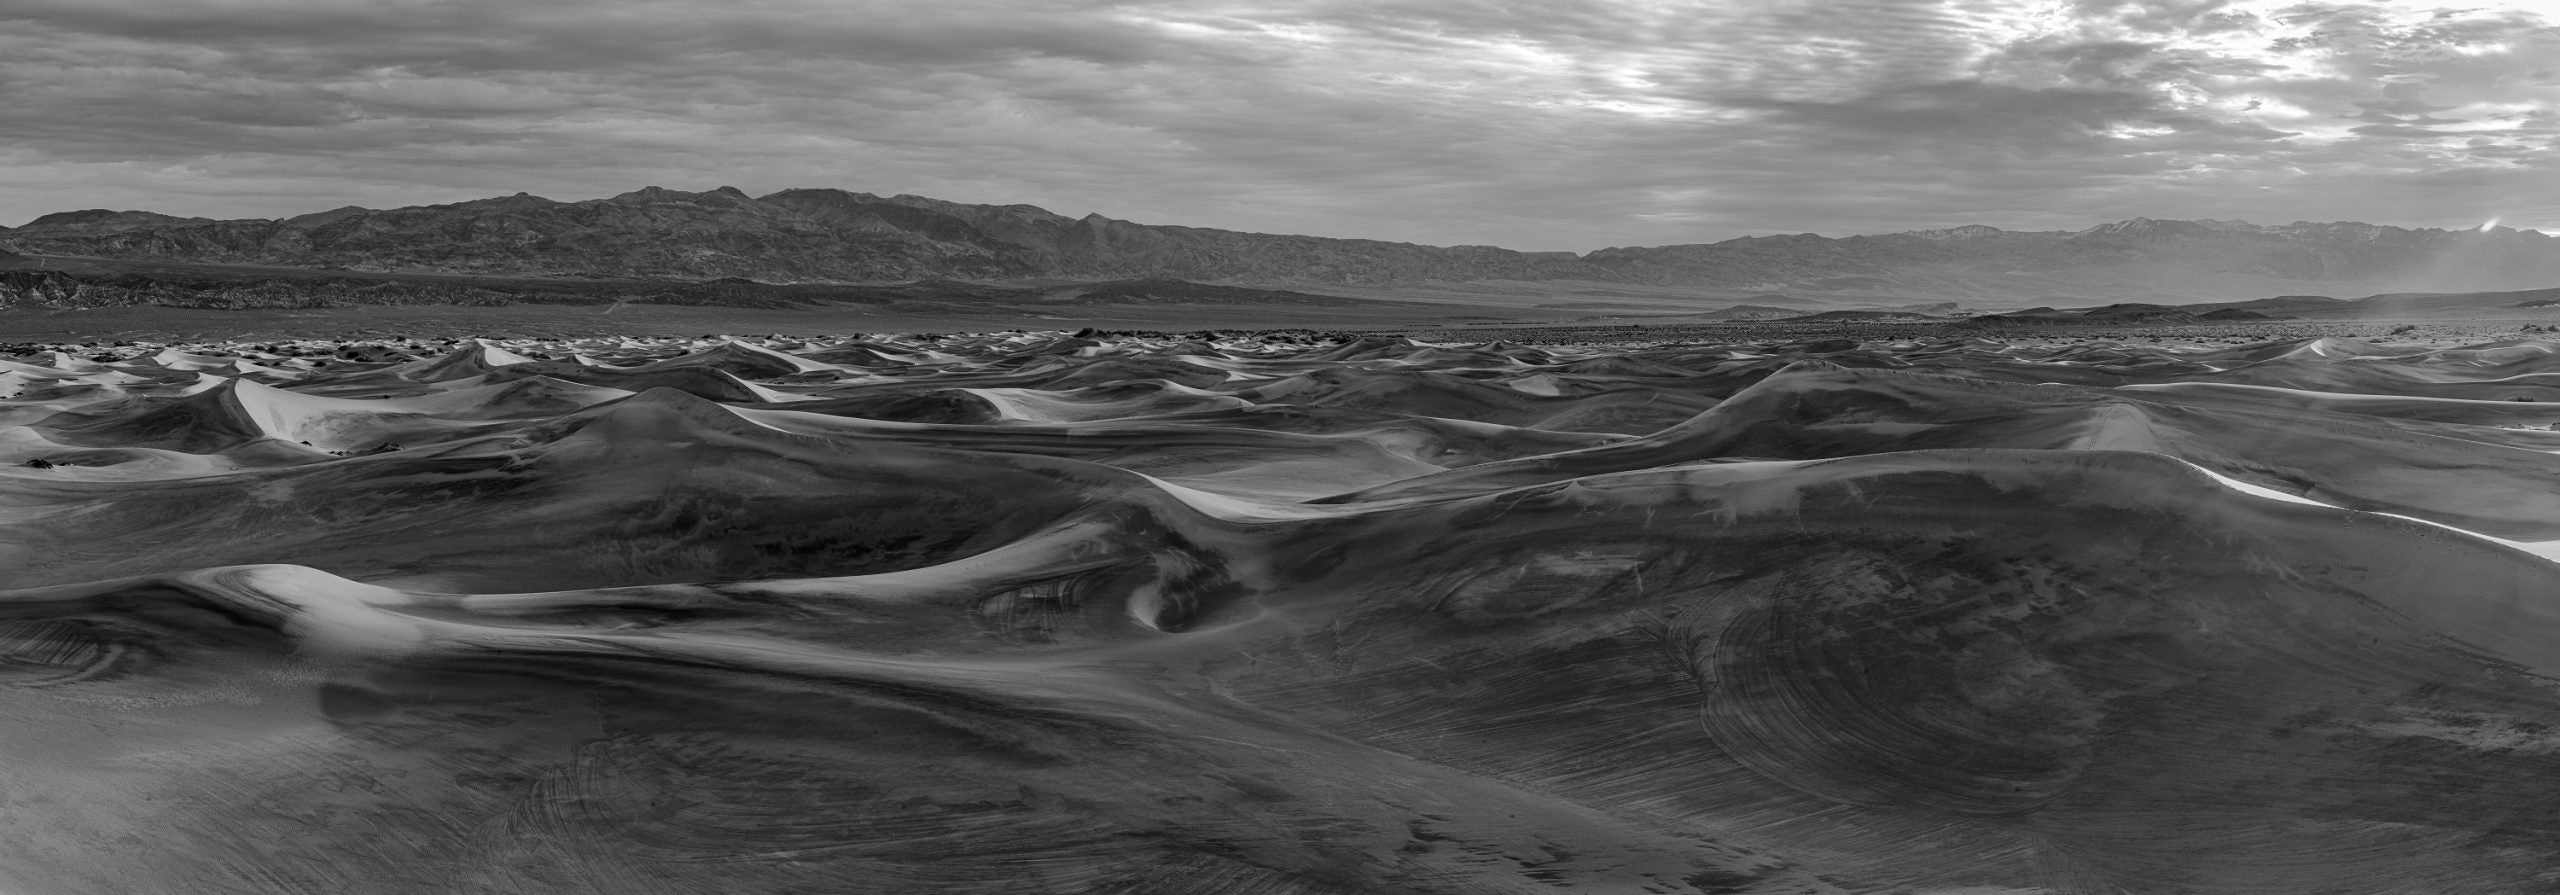 duna de areia de prêmio de foto preto e branco